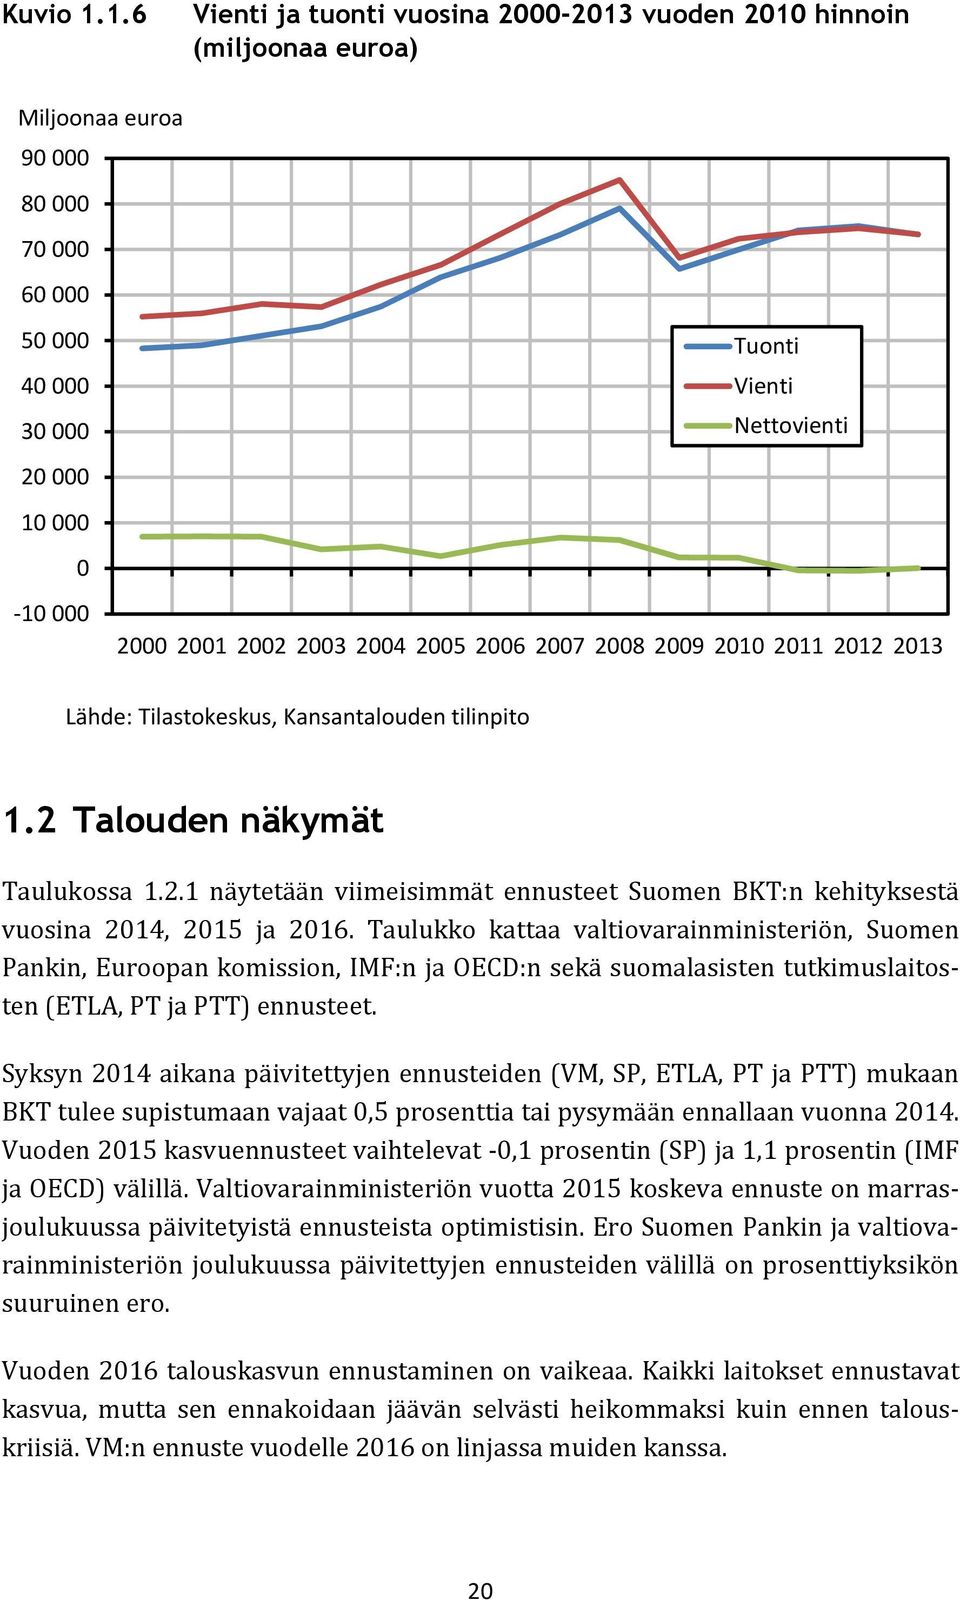 2001 2002 2003 2004 2005 2006 2007 2008 2009 2010 2011 2012 2013 Lähde: Tilastokeskus, Kansantalouden tilinpito 1.2 Talouden näkymät Taulukossa 1.2.1 näytetään viimeisimmät ennusteet Suomen BKT:n kehityksestä vuosina 2014, 2015 ja 2016.